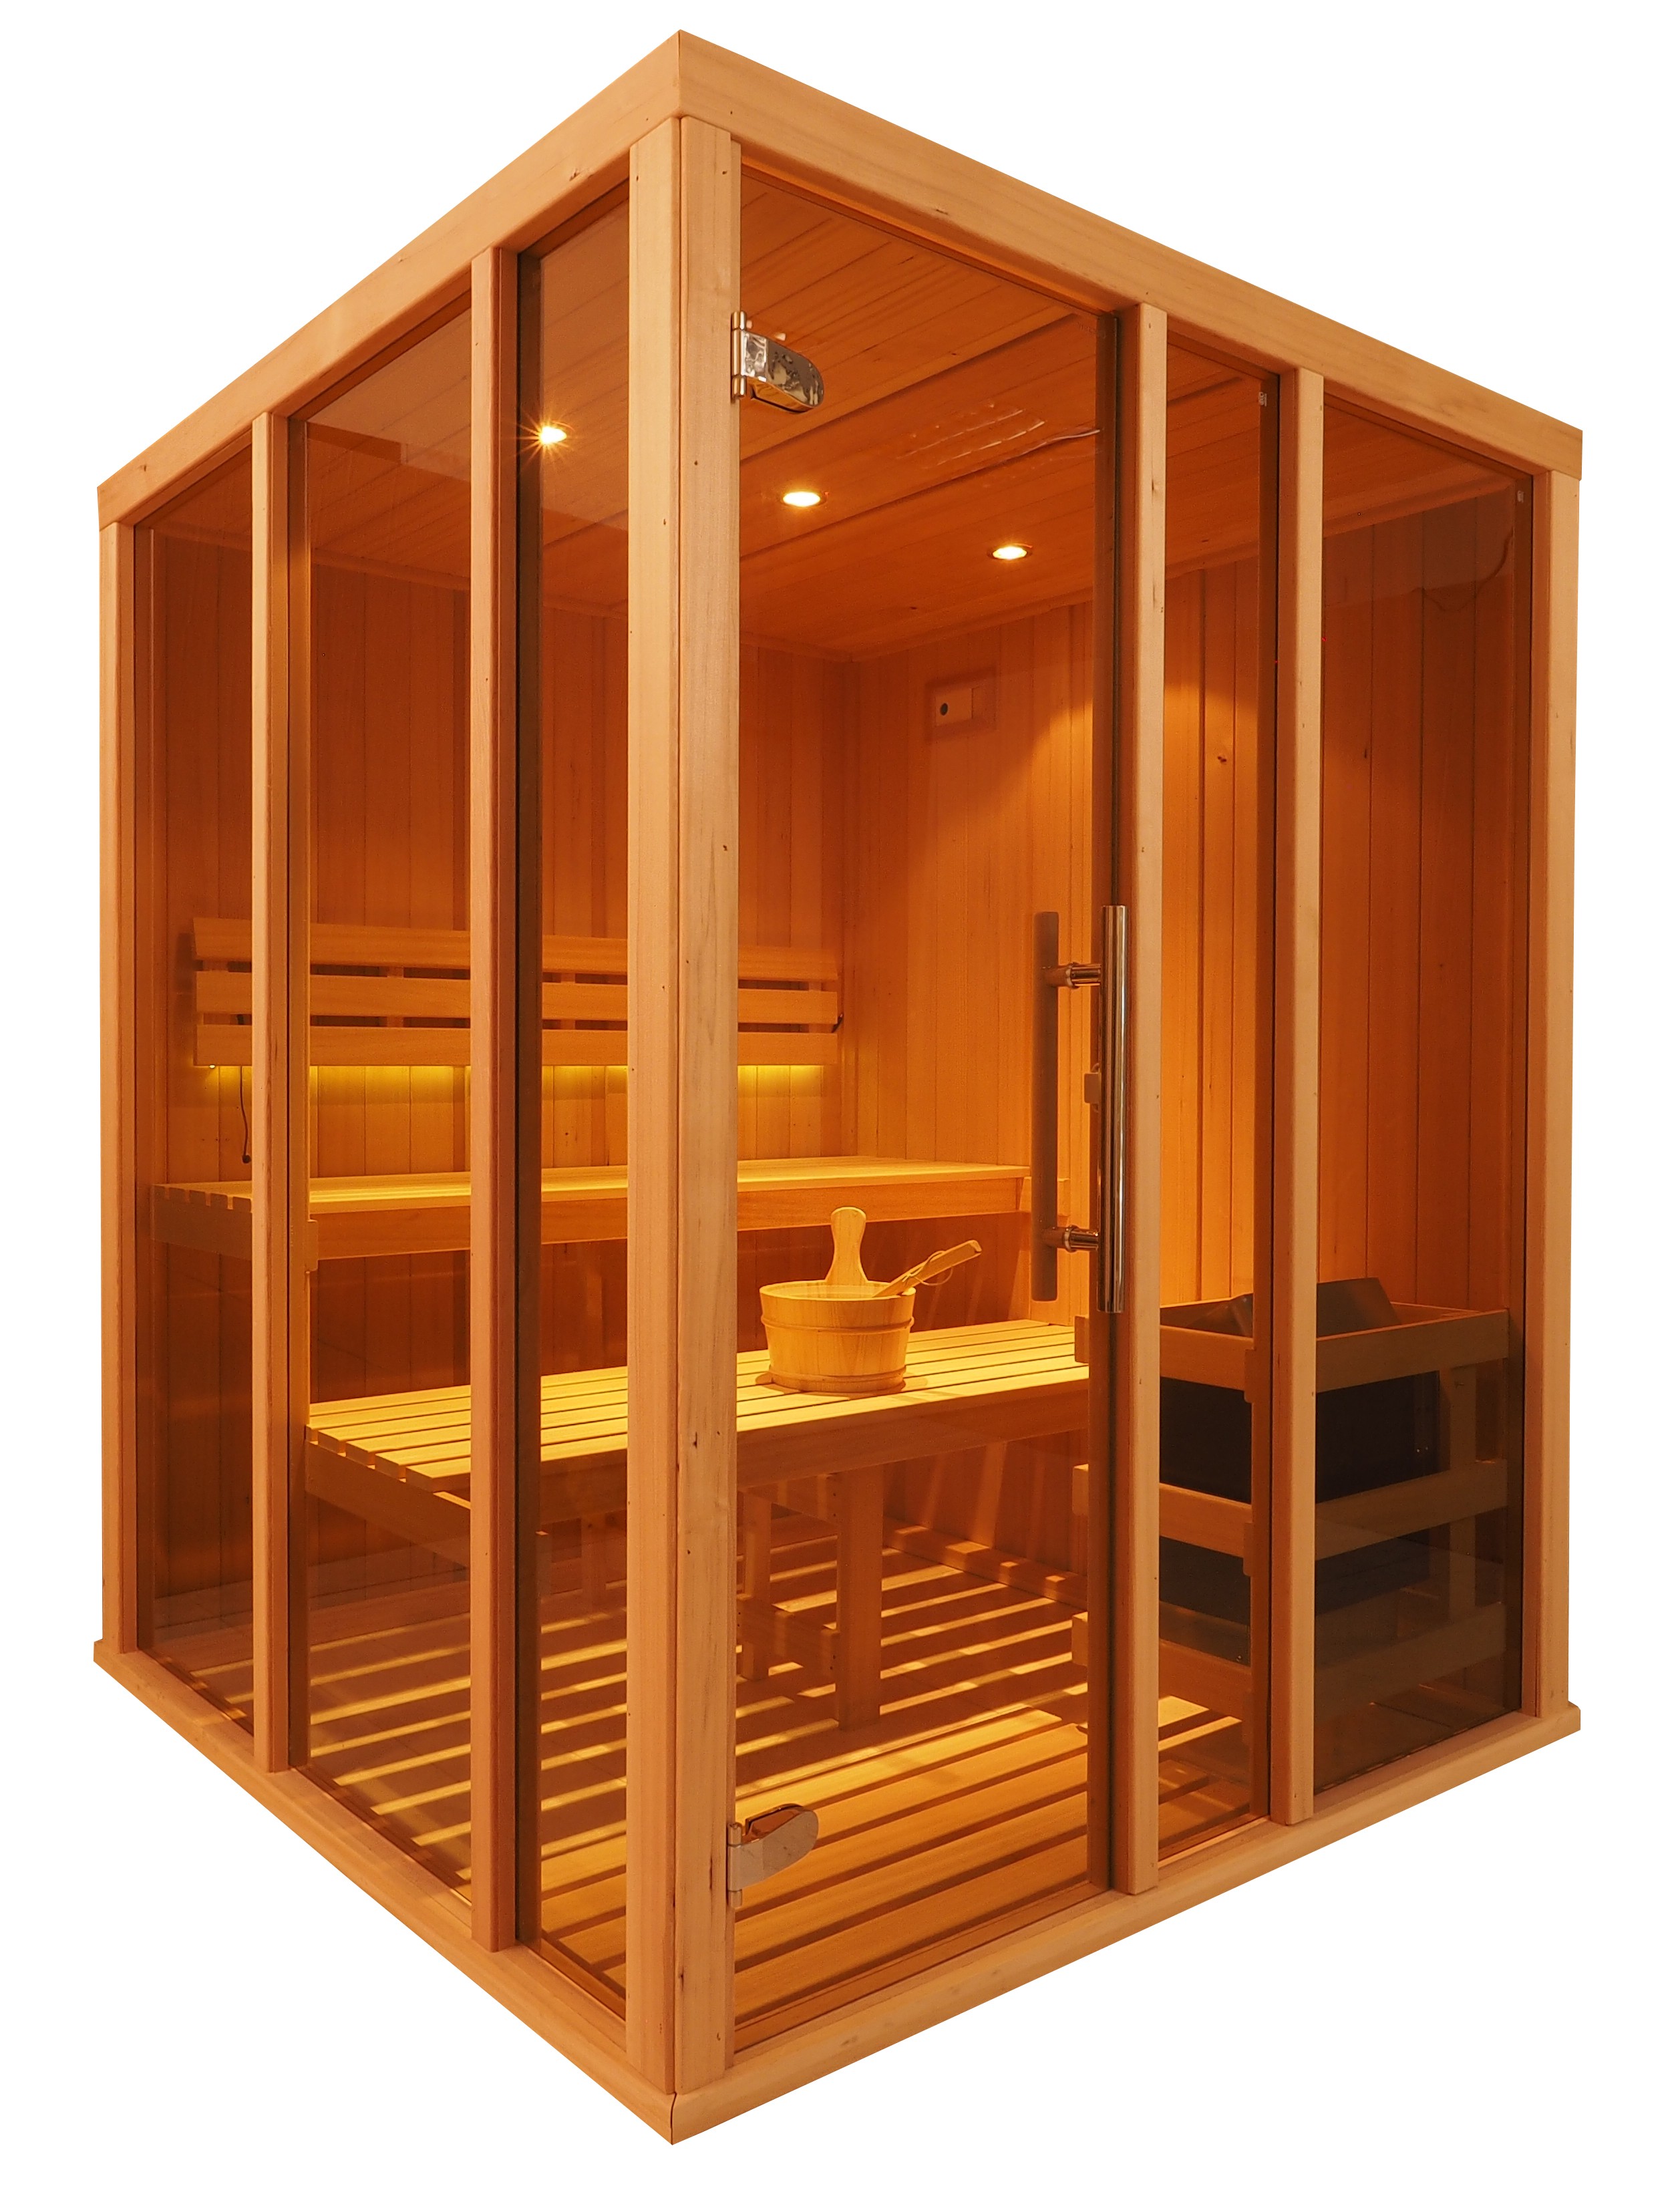 V2525 - Cabina de sauna finlandesa Vision para 4 personas con